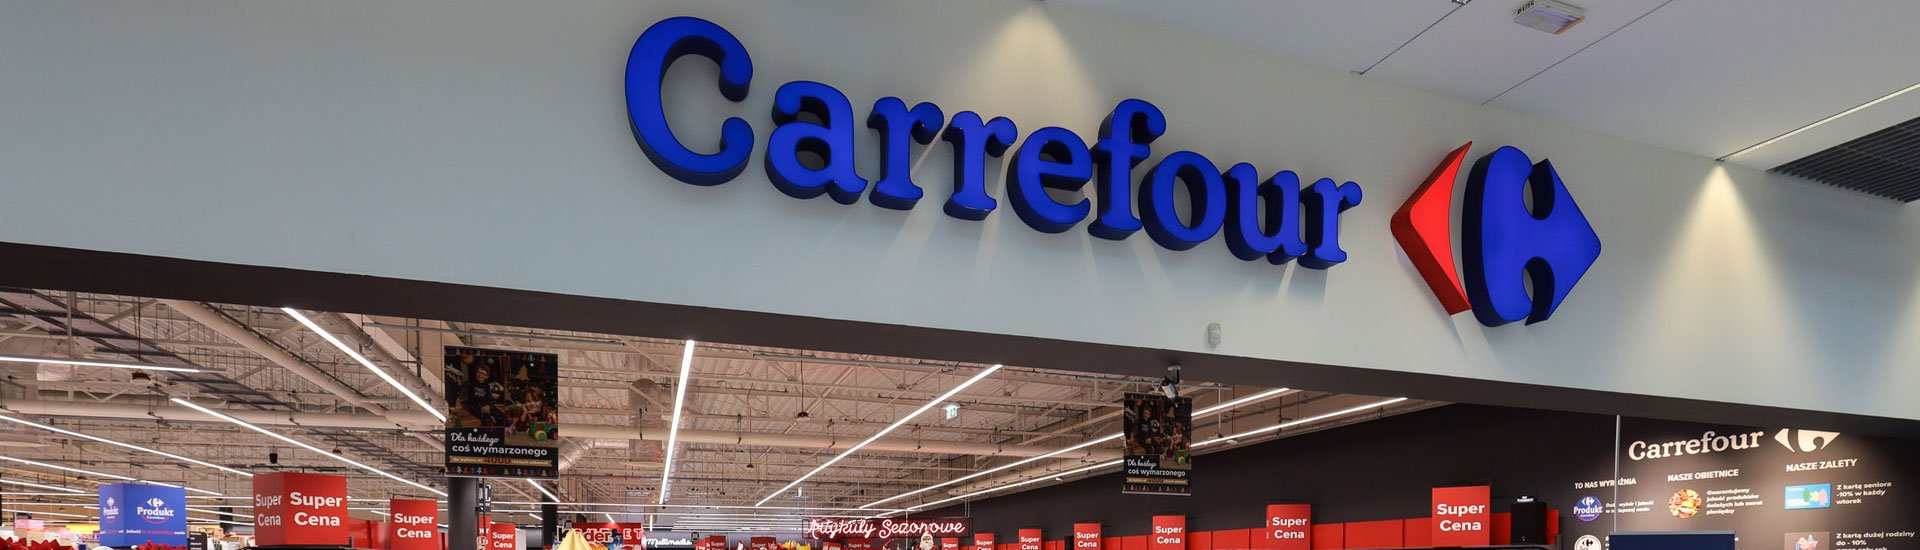 Największy i najnowocześniejszy sklep w Suwałkach - hipermarket Carrefour już otwarty!